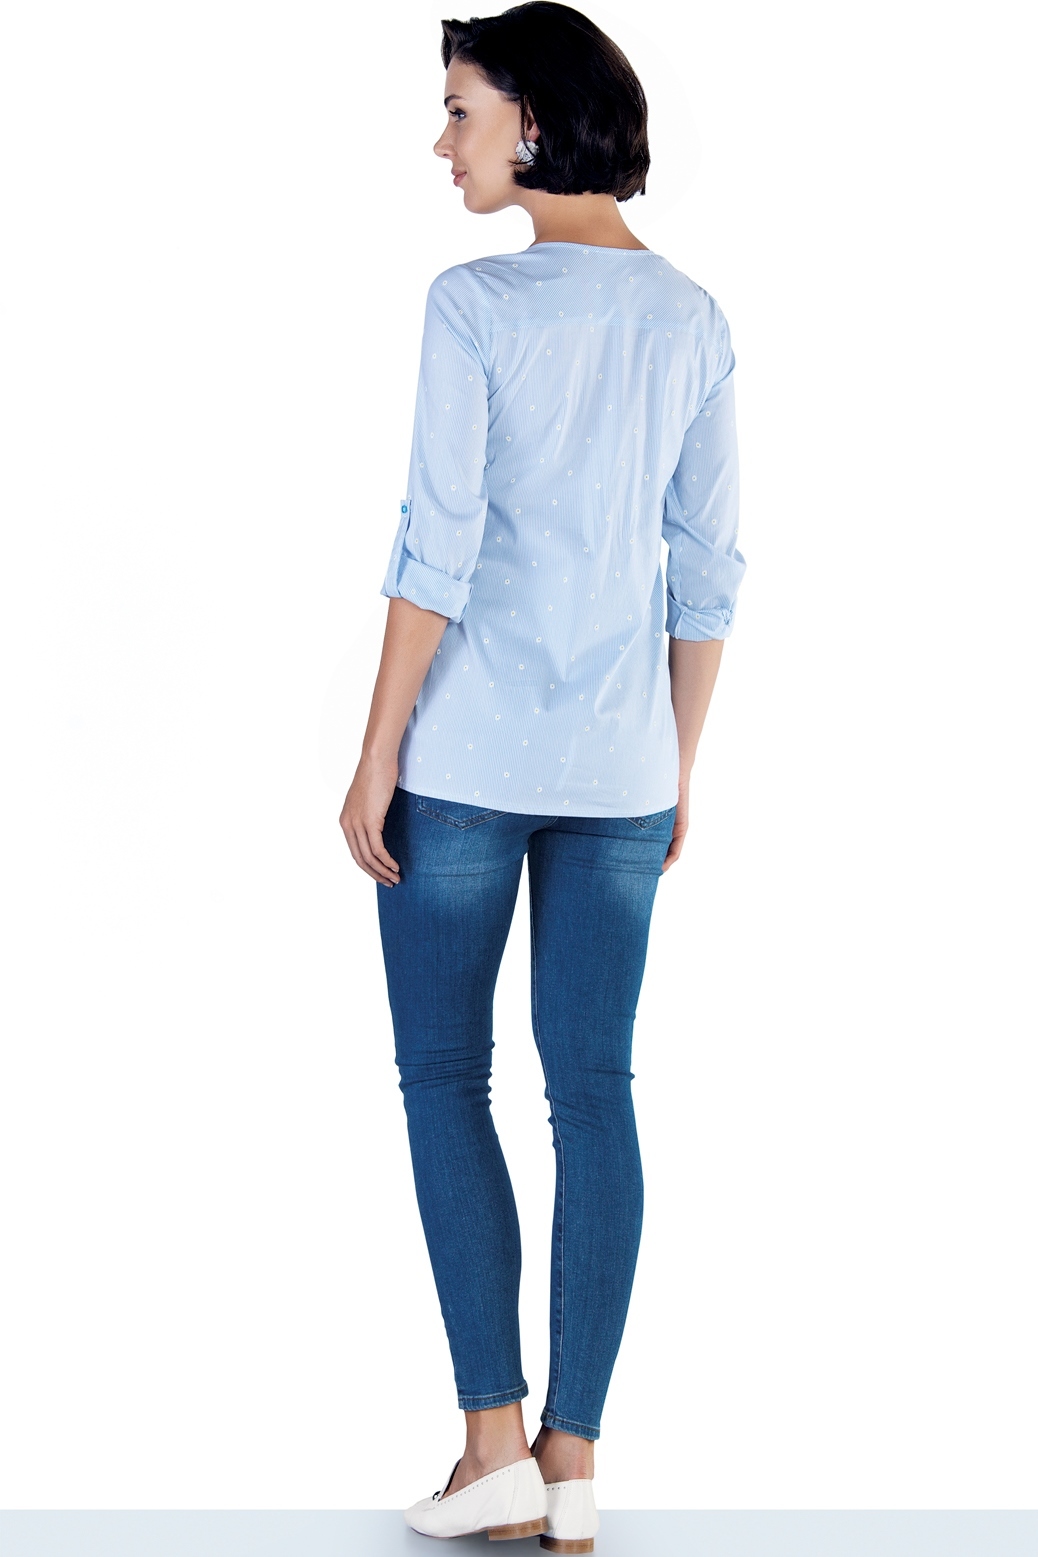 Фото укороченные джинсы-skinny для беременных EBRU, с эластичной вставкой от магазина СкороМама, синий, весна-лето, размеры.